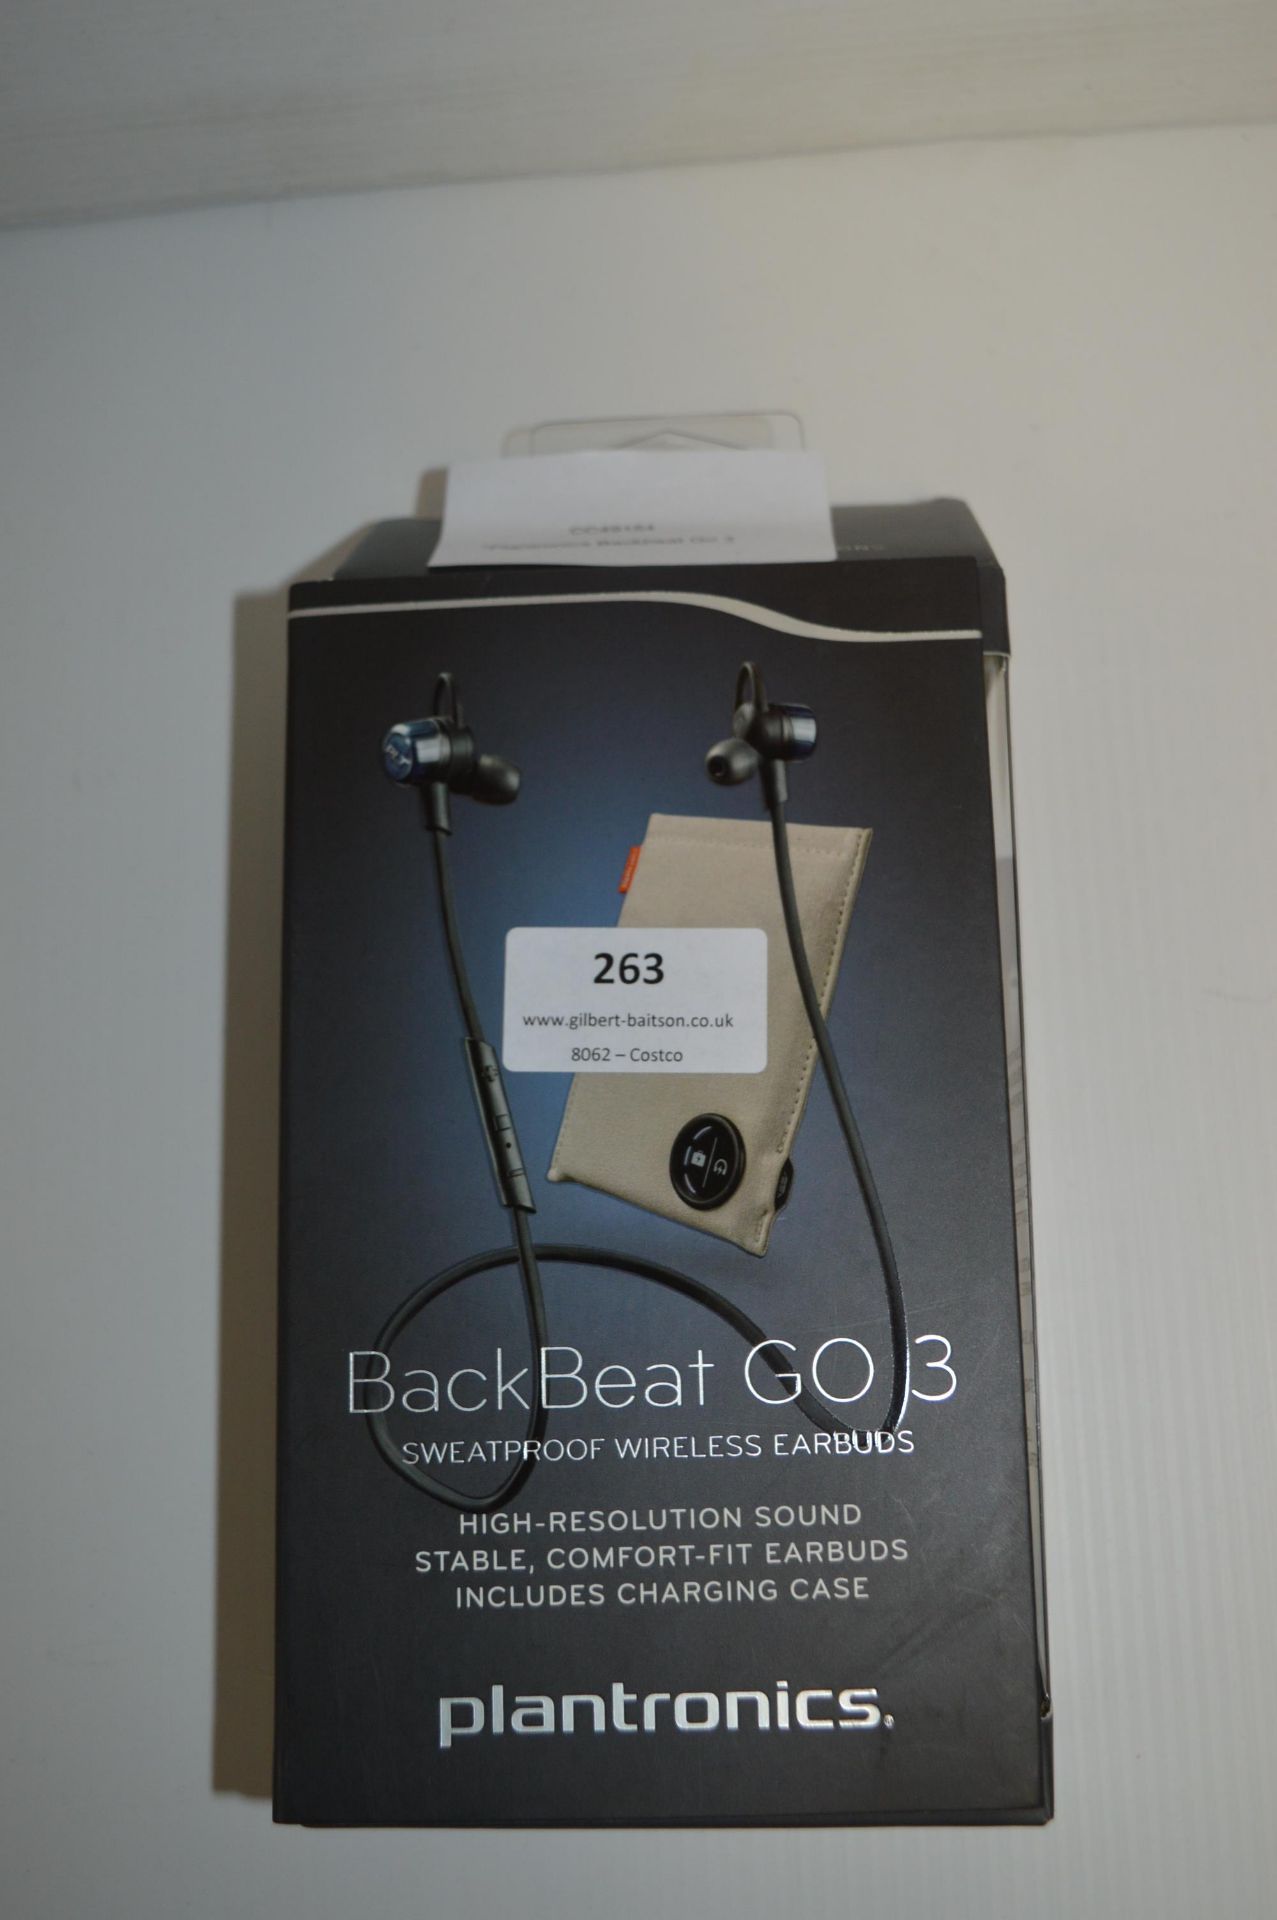 *Plantronics Backbeat Go 3 Wireless Earbuds